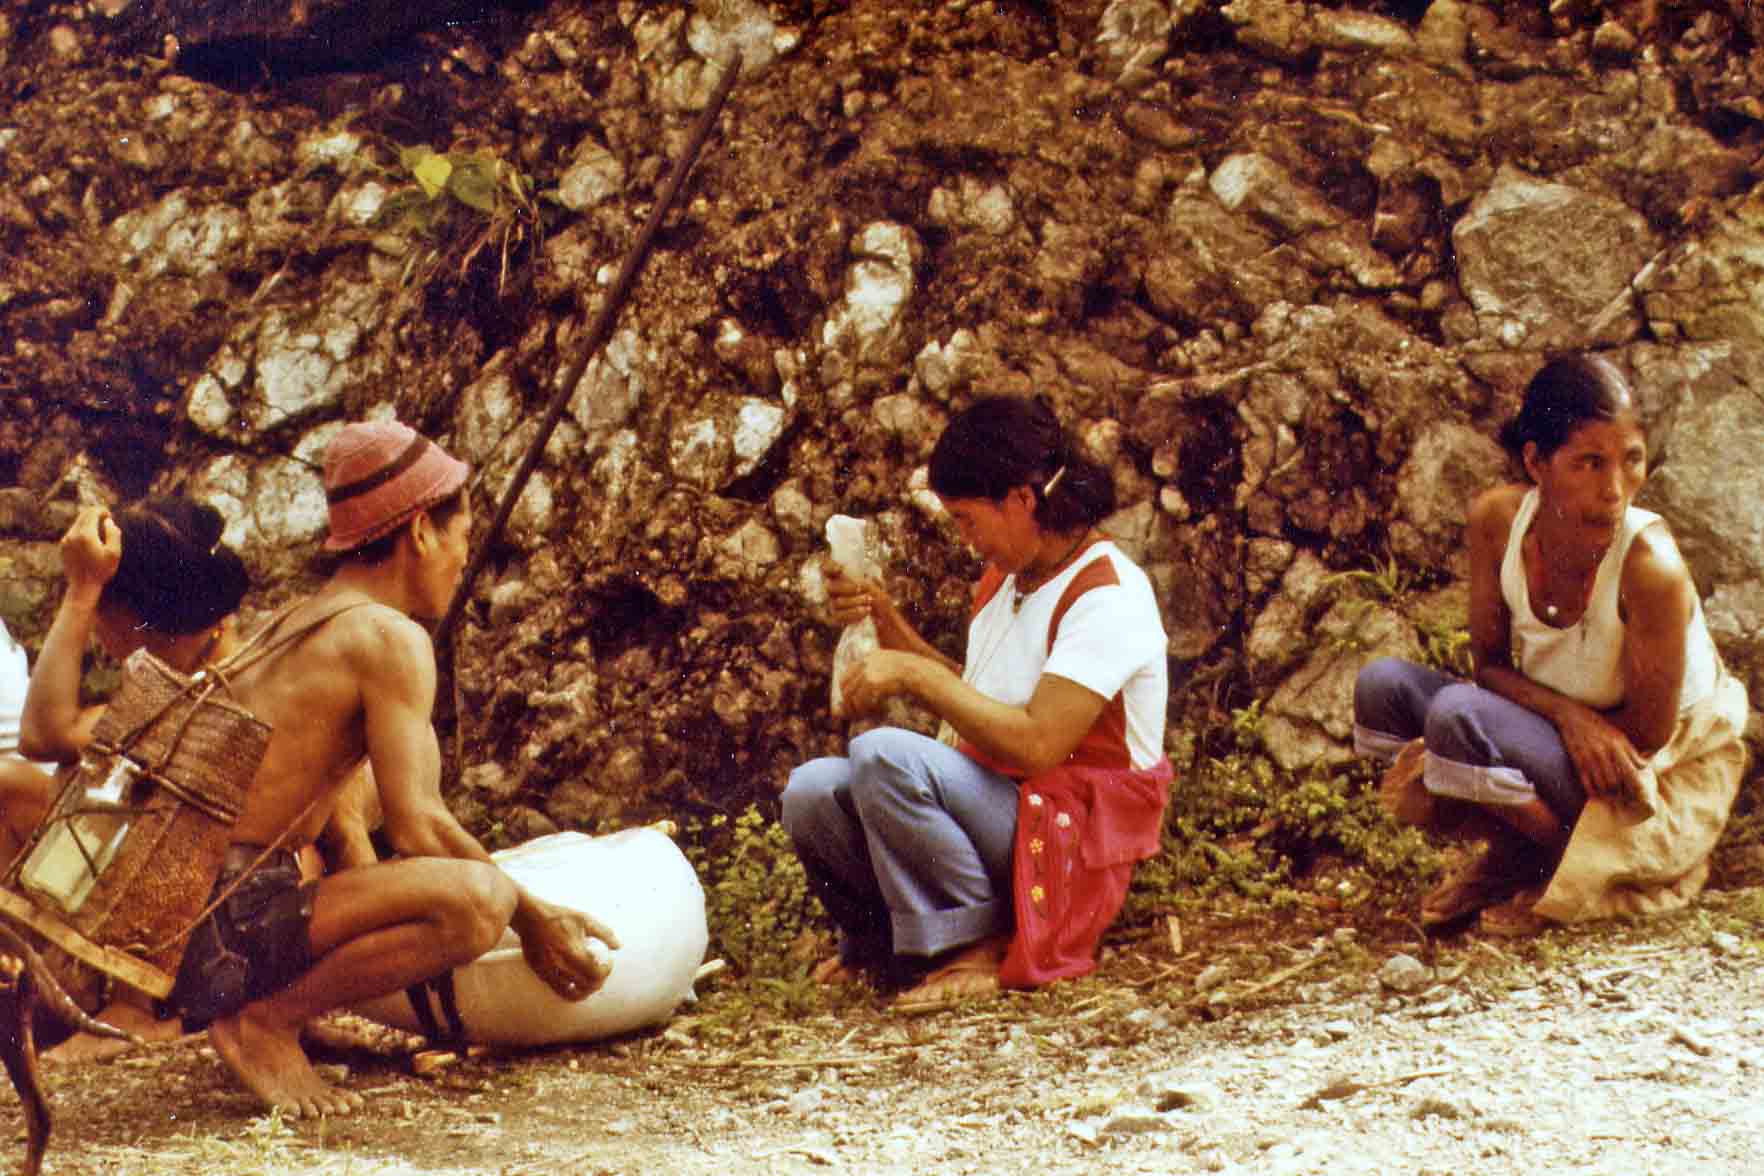 Natives between Bontoc and Banaue